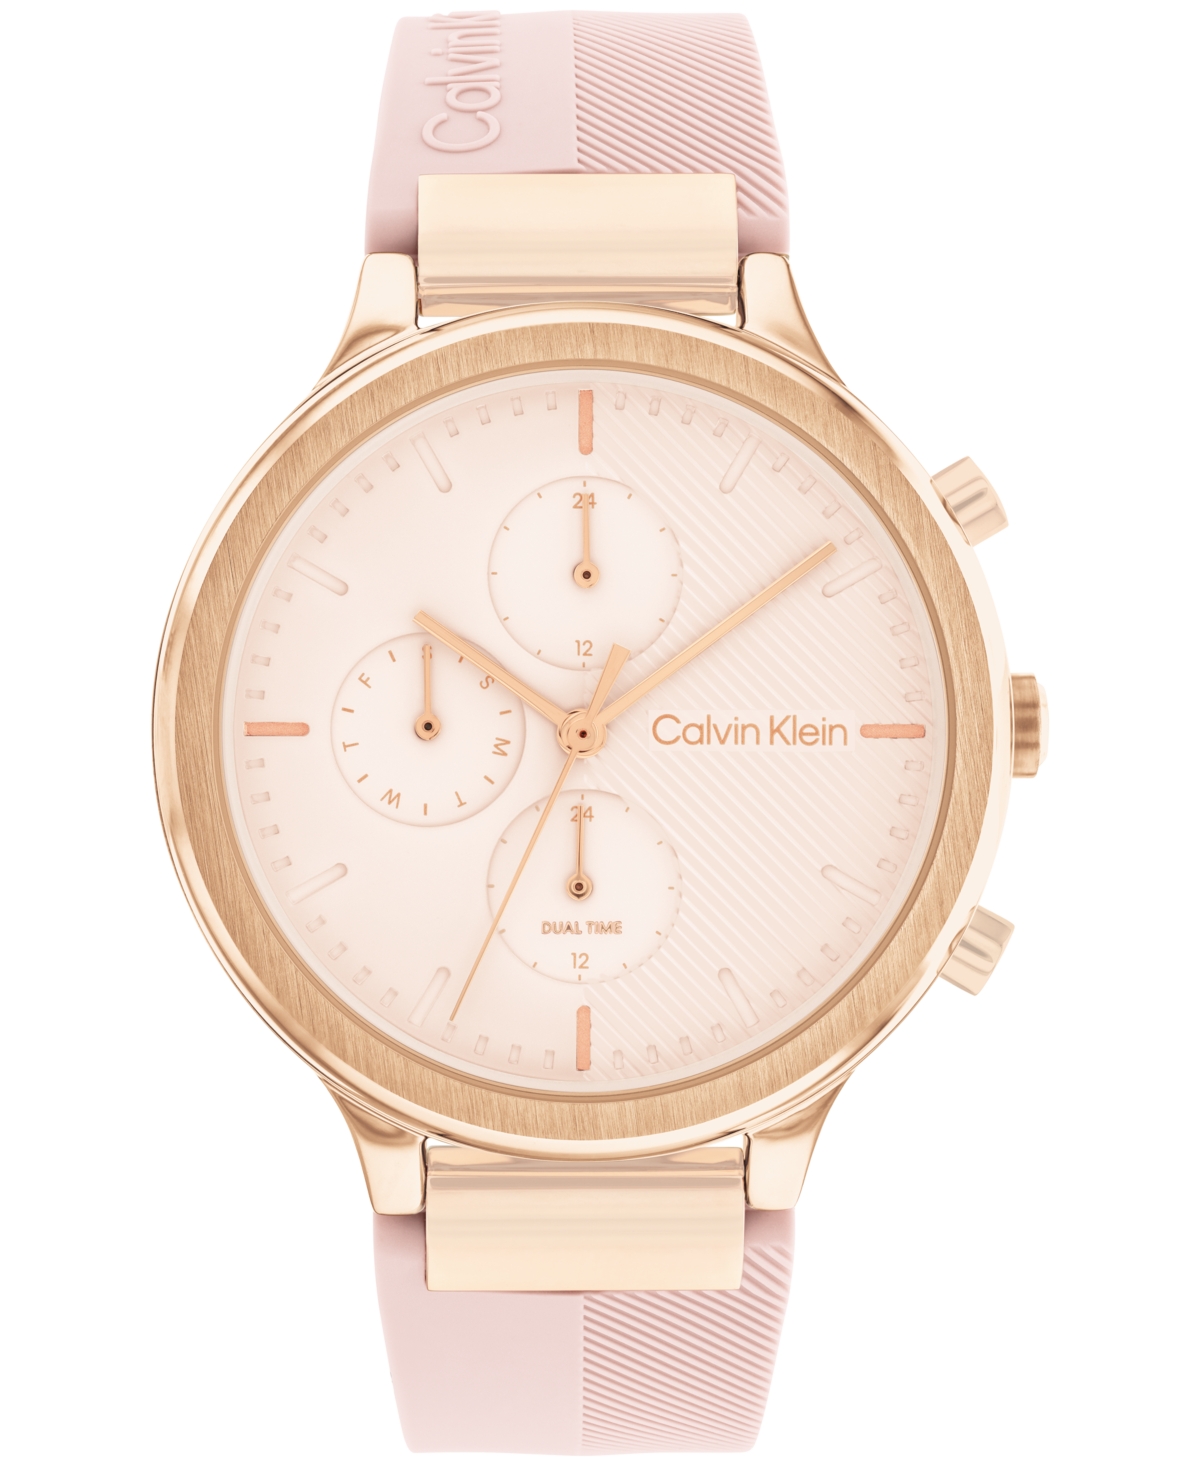 Calvin Klein Women's Multifunction Pink Silicone Strap Watch 38mm